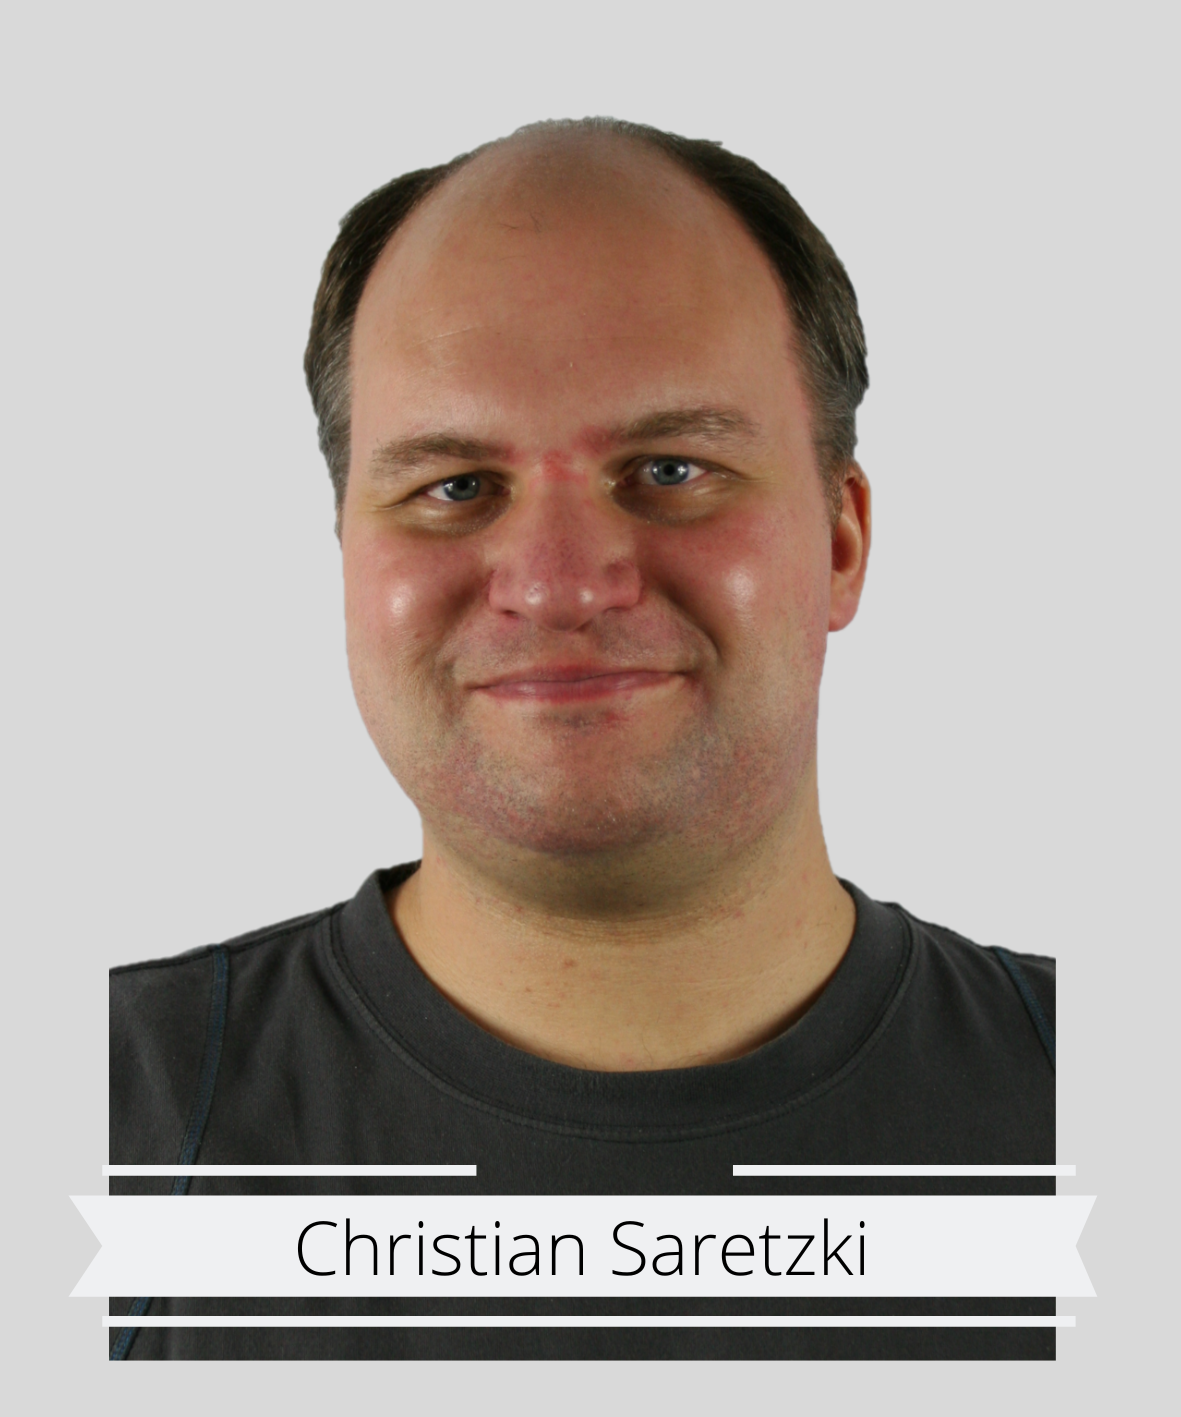 Christian Saretzki